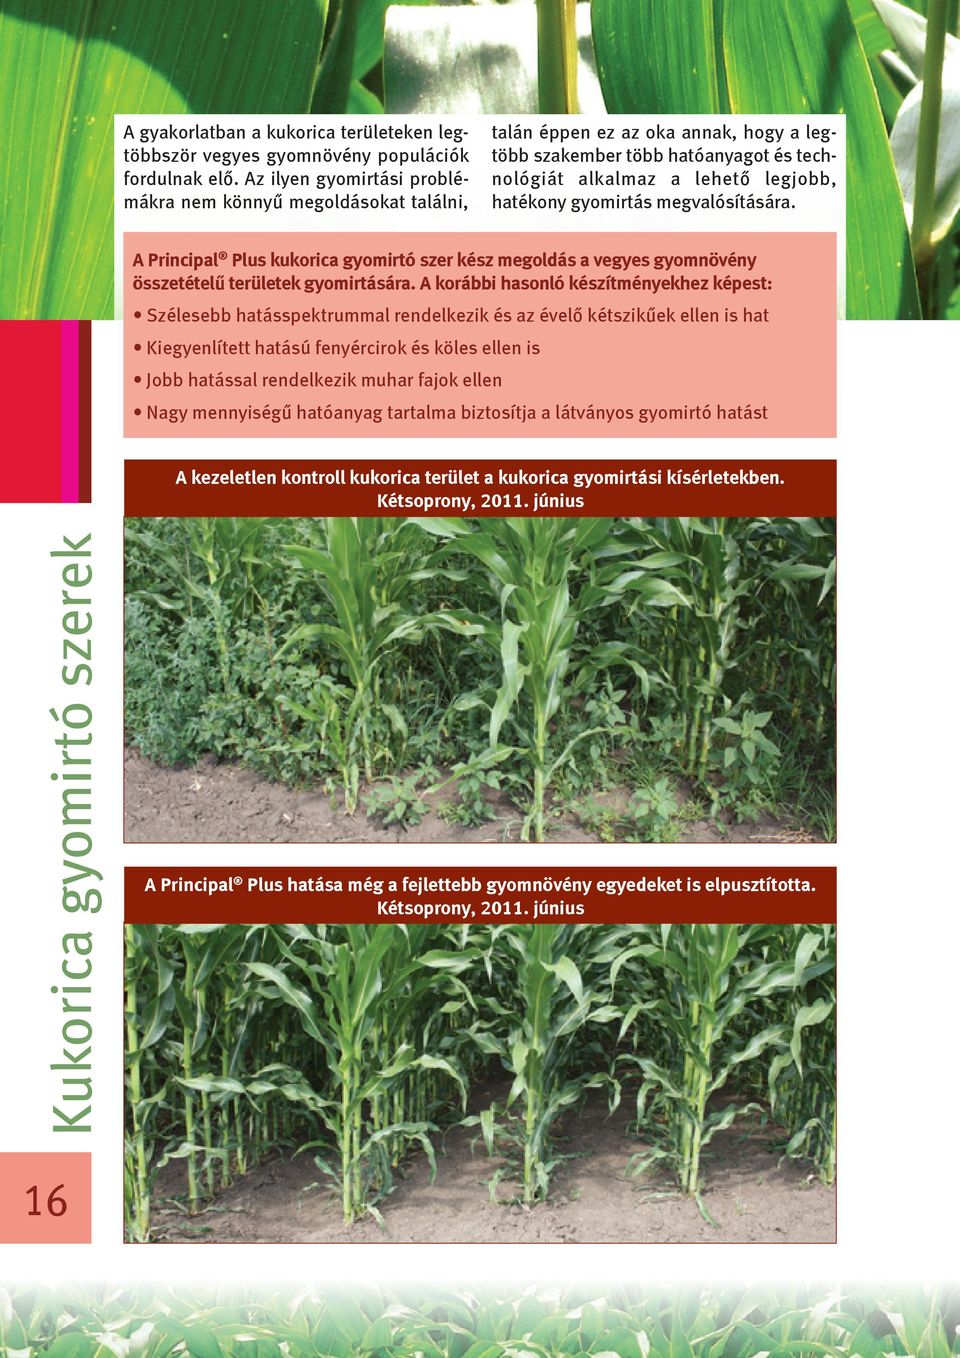 megvalósítására. A Principal Plus kukorica gyomirtó szer kész megoldás a vegyes gyomnövény összetételű területek gyomirtására.